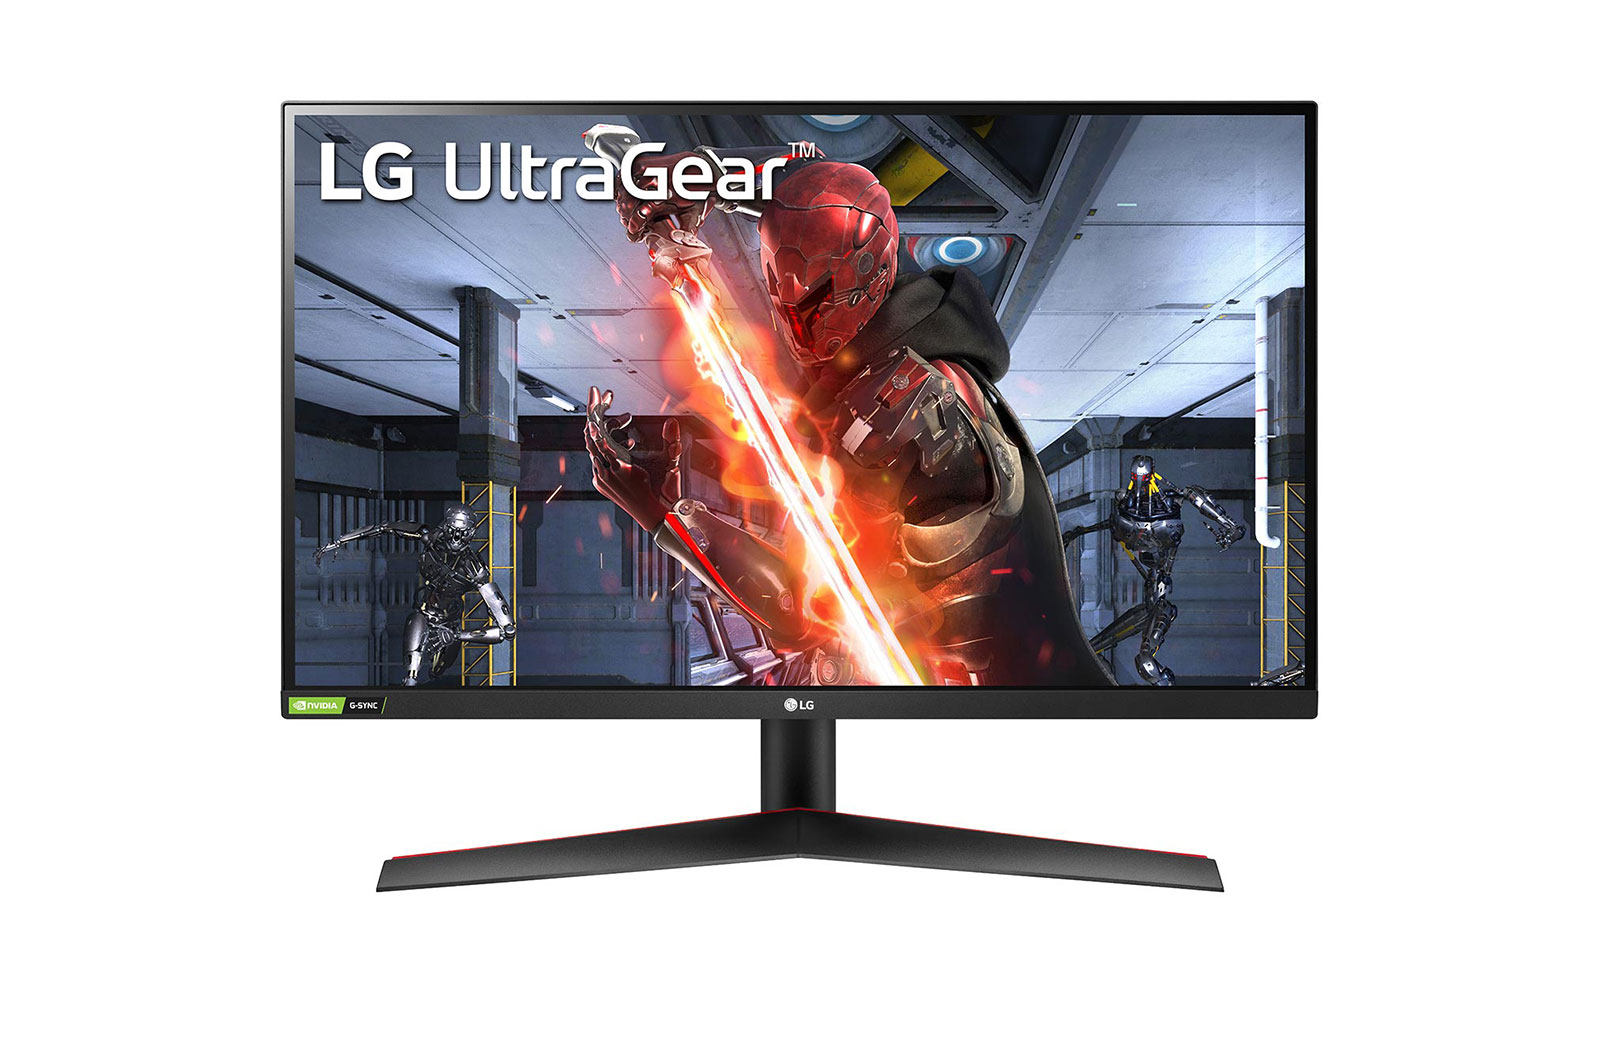 Màn hình máy tính LG UltraGear là sự lựa chọn lý tưởng cho những người yêu thích game và giải trí. Với độ phân giải cao, tần số quét siêu nhanh và nhiều tính năng hiện đại, chắc chắn sẽ mang đến cho bạn trải nghiệm trò chơi và giải trí không thể tuyệt vời hơn.